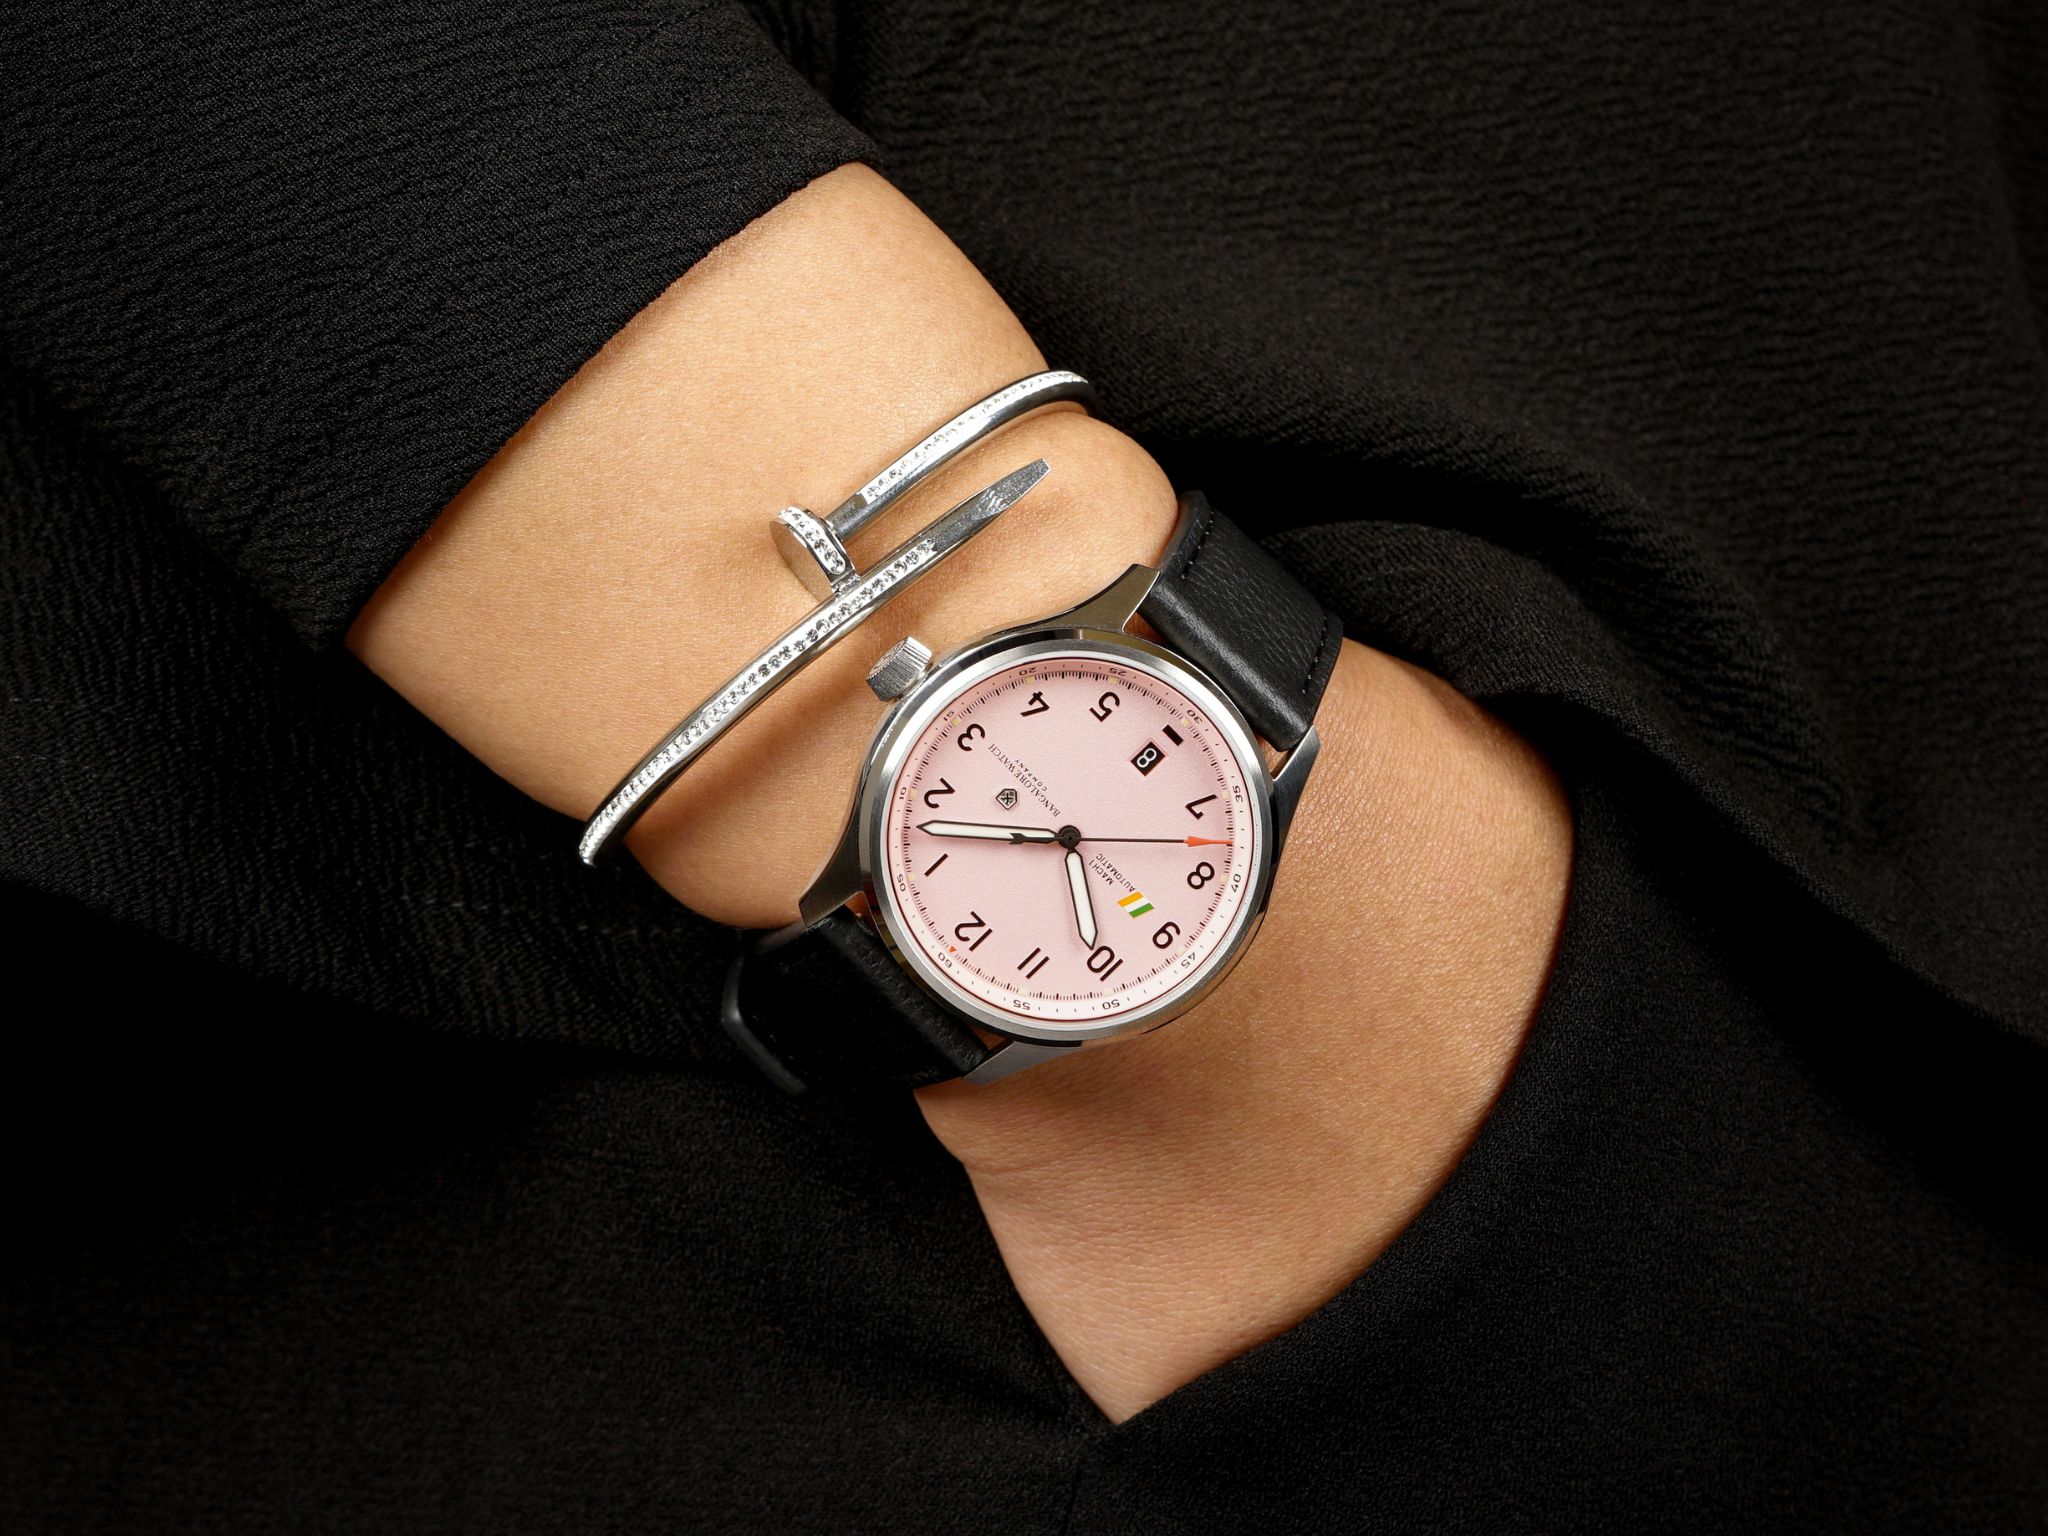 Bangalore Watch Company чествует женщин в авиации, выпуская часы MACH 1 с шелковым шарфом